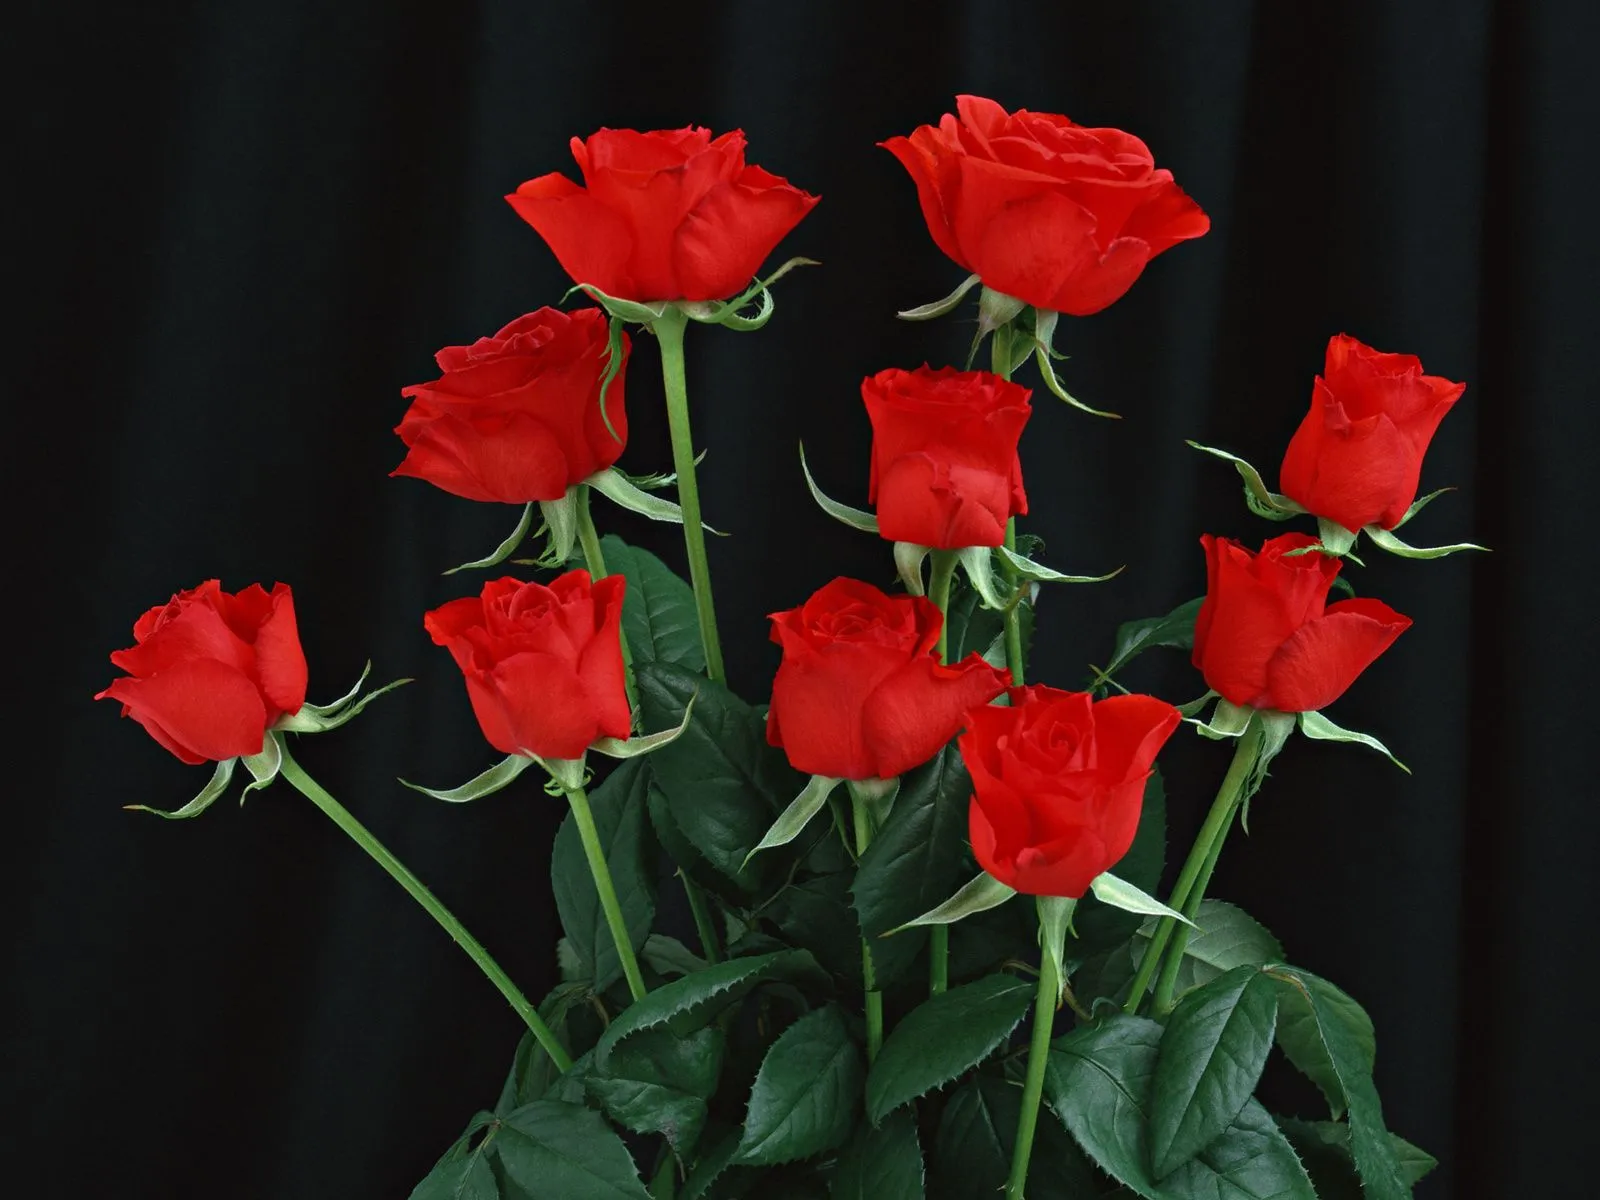 Fotos de hermosas rosas rojas ~ Mejores Fotos del Mundo ...